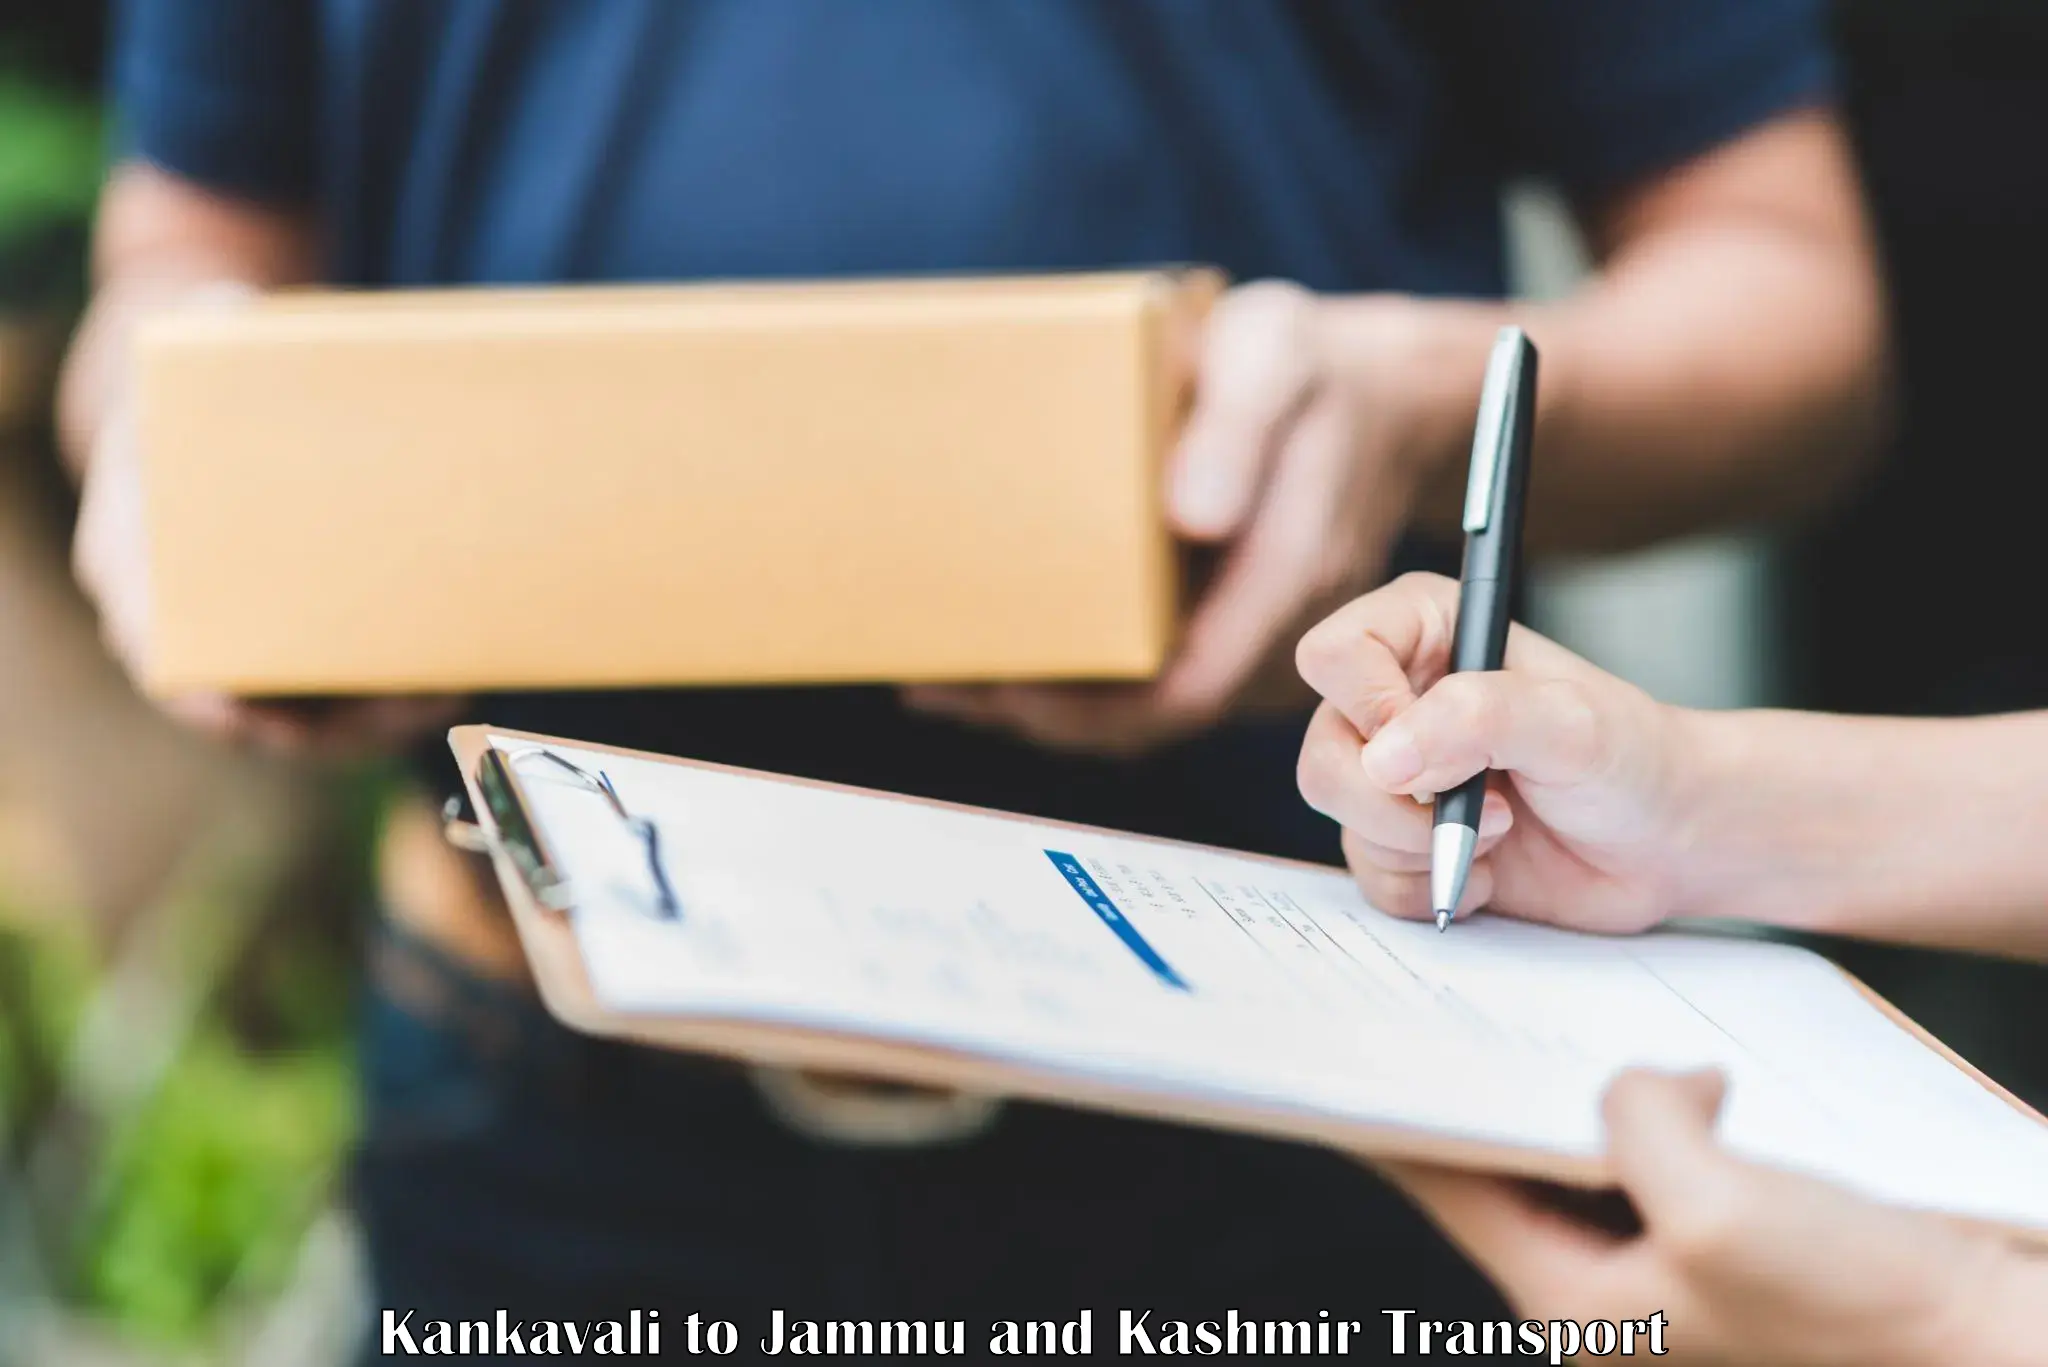 Land transport services in Kankavali to Kishtwar